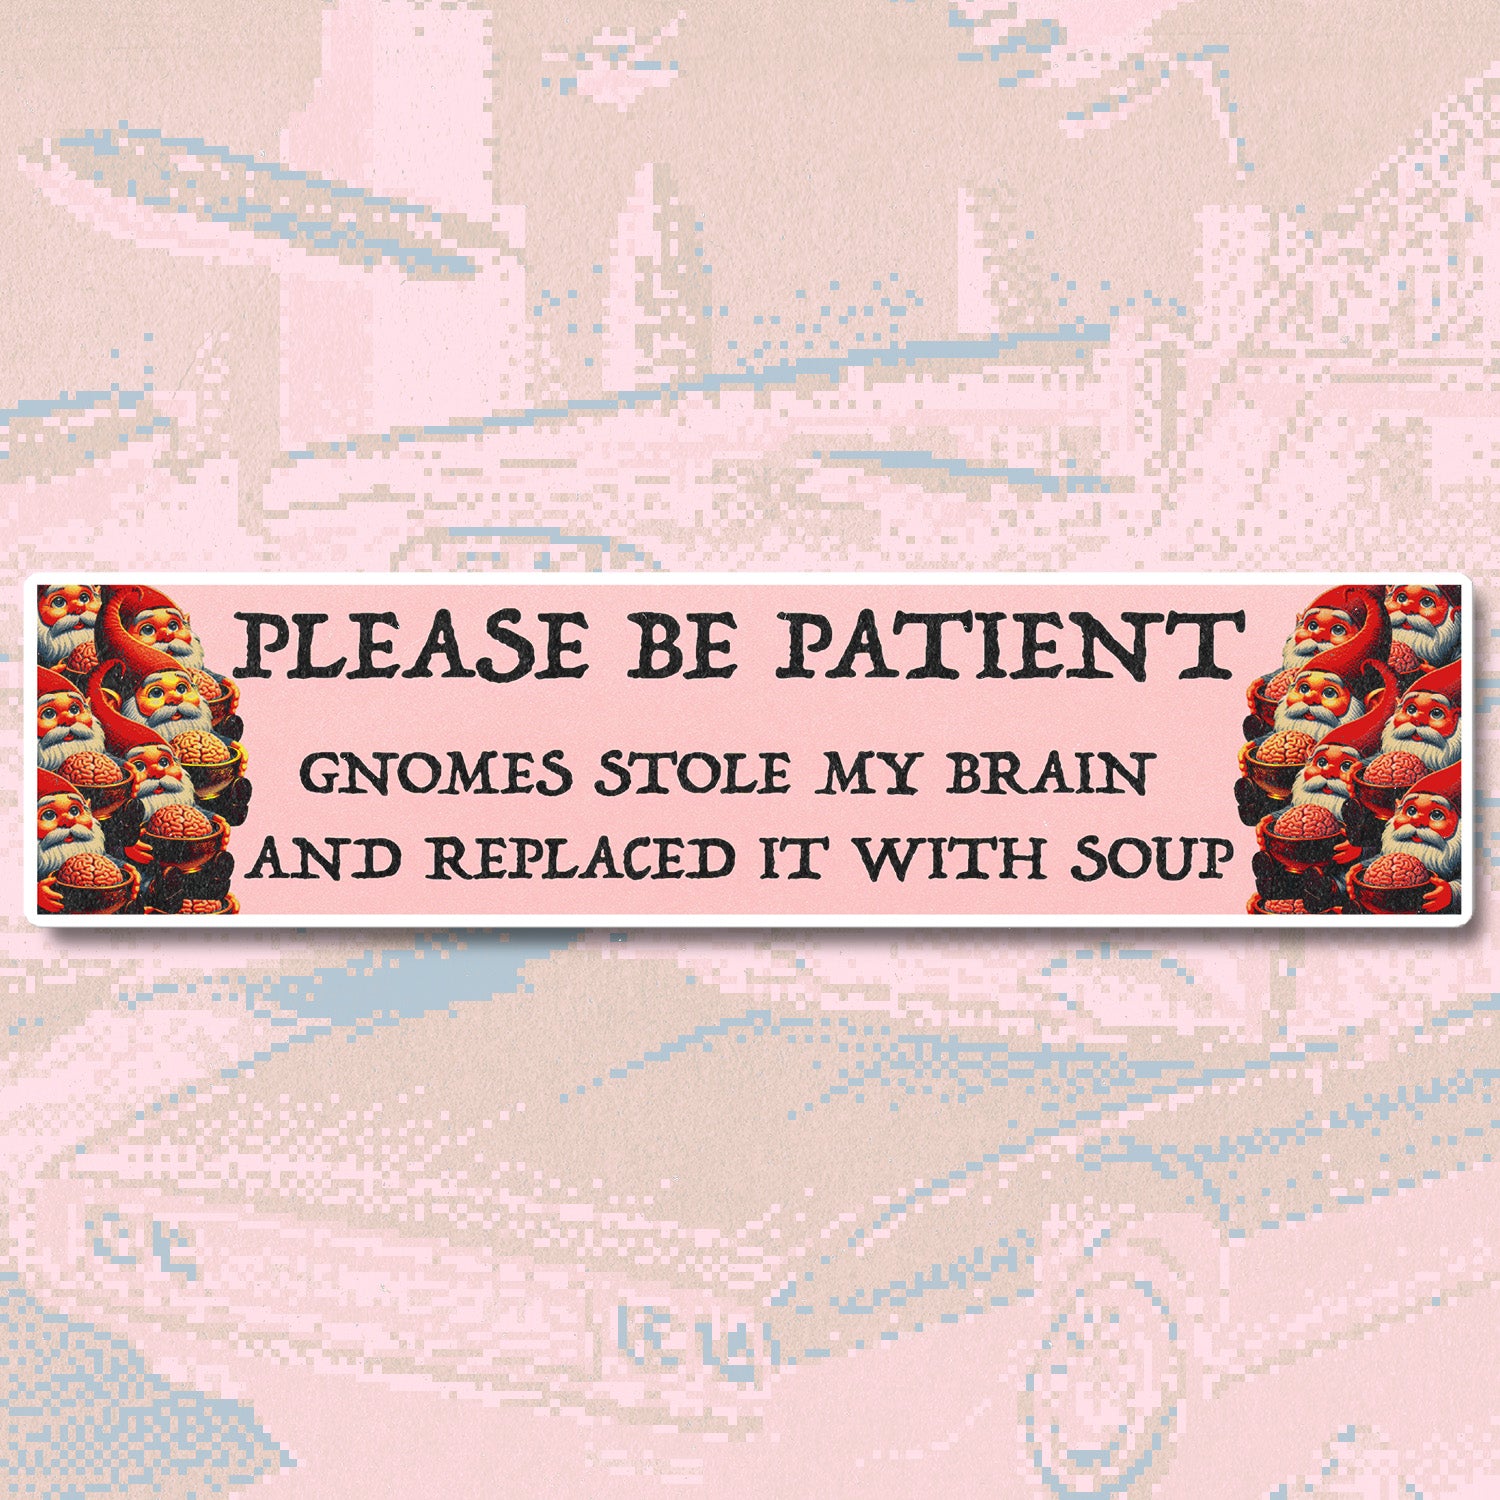 gnomes stole my brain bumper sticker